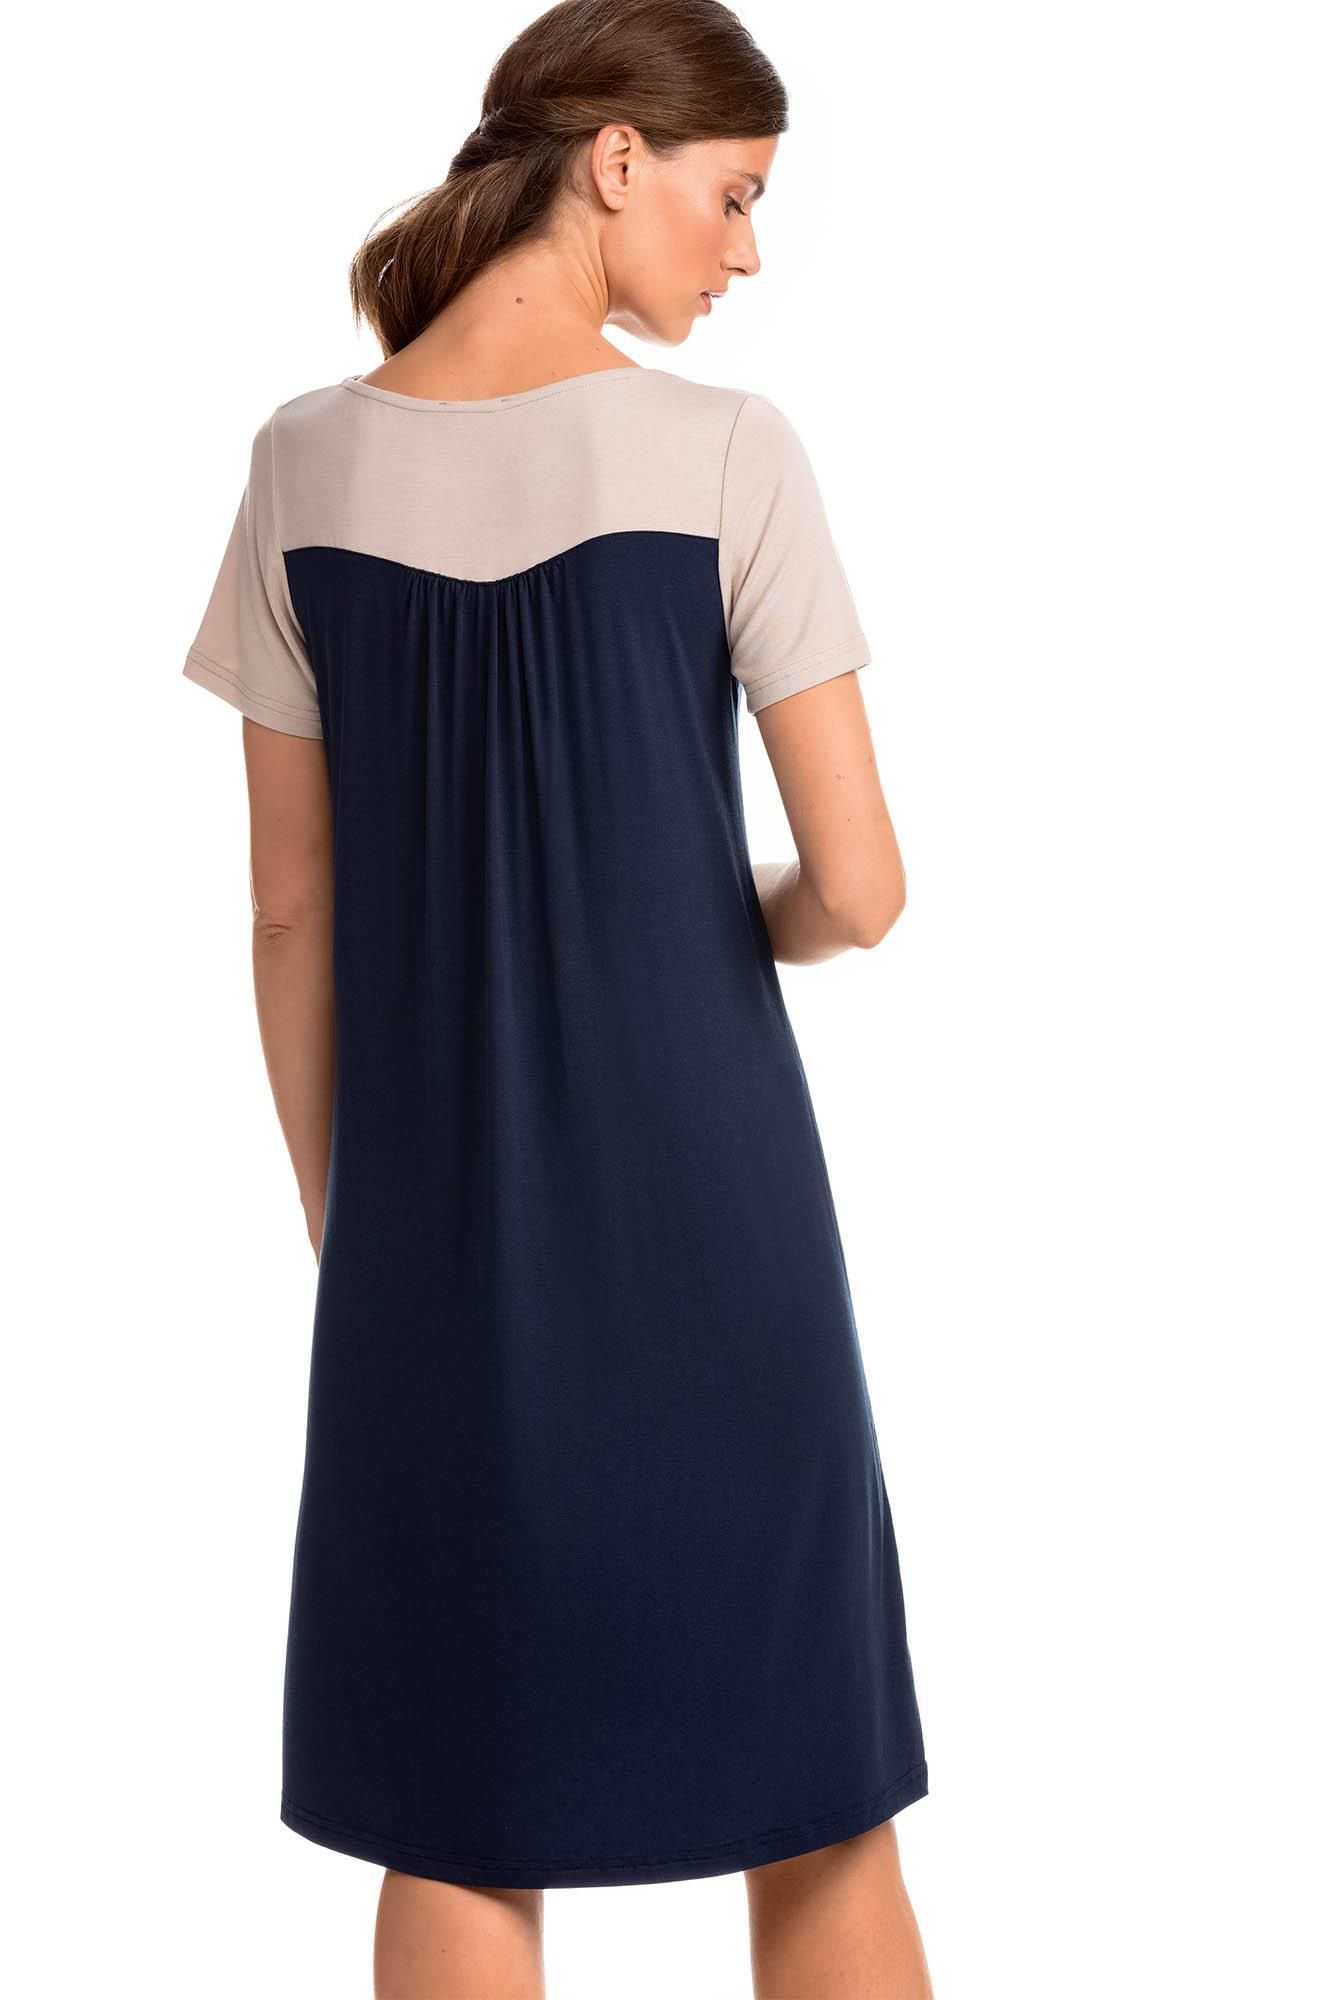 Short-Sleeved Dress